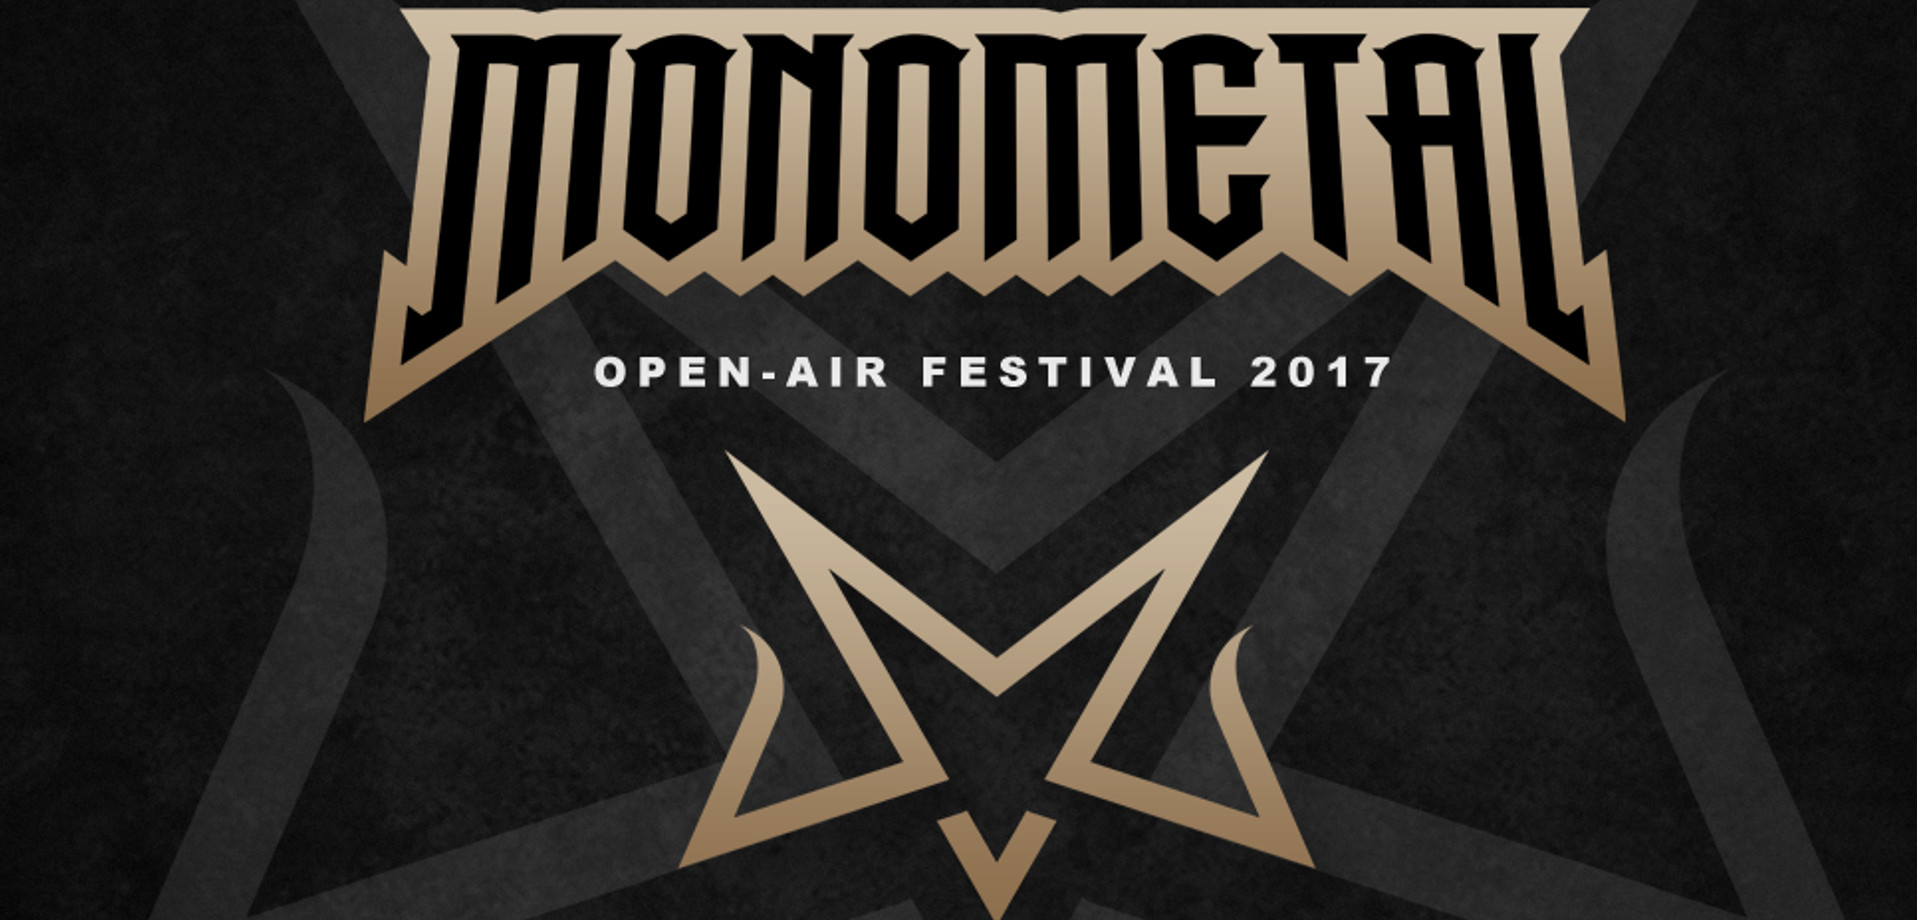 Monometal Open - Air Festival